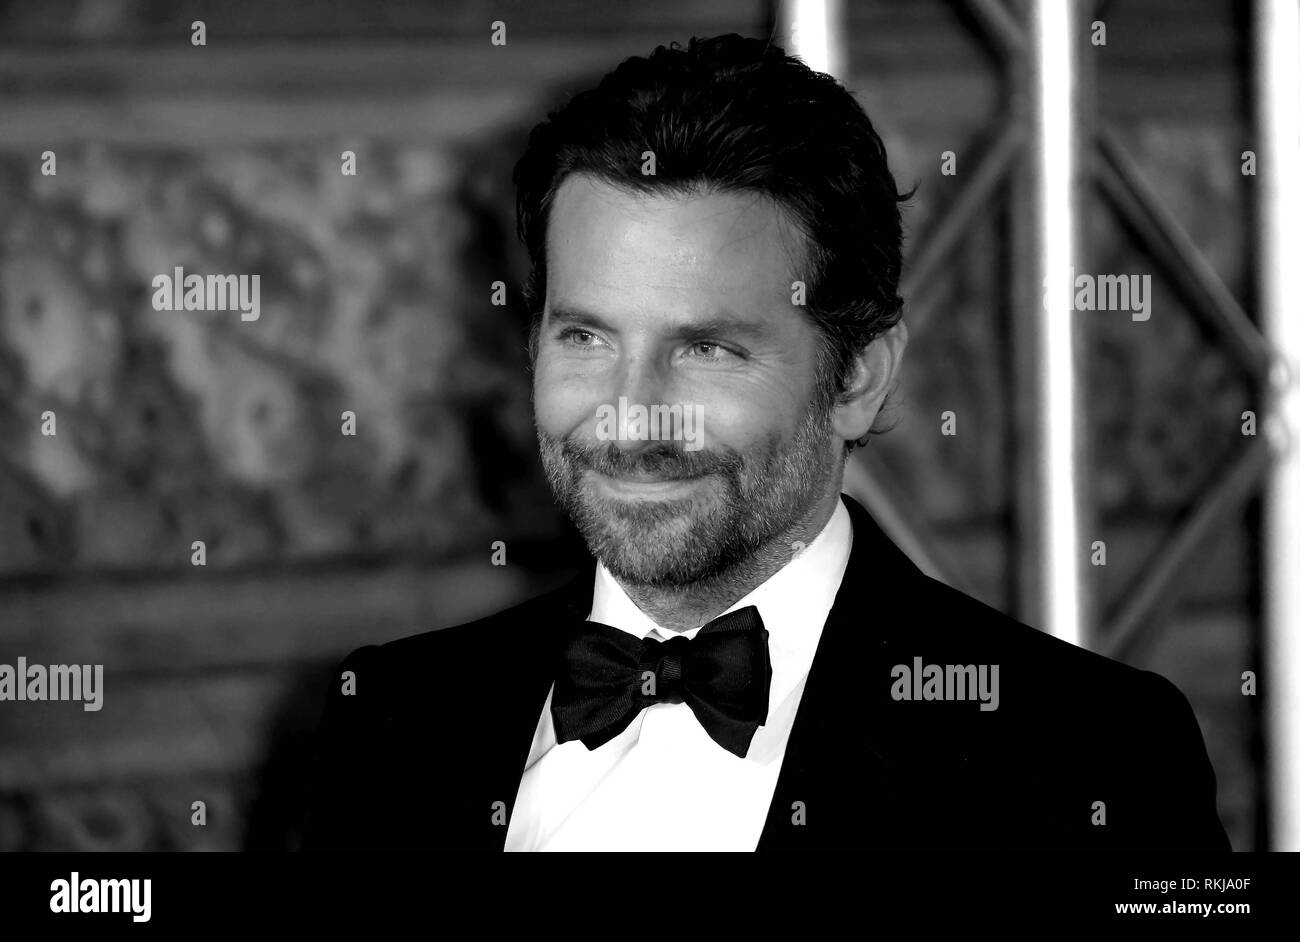 Feb 10, 2019 - Bradley Cooper fréquentant EE British Academy Film Awards 2019 - Autre point de vue, le Royal Albert Hall à Londres, Royaume-Uni Banque D'Images